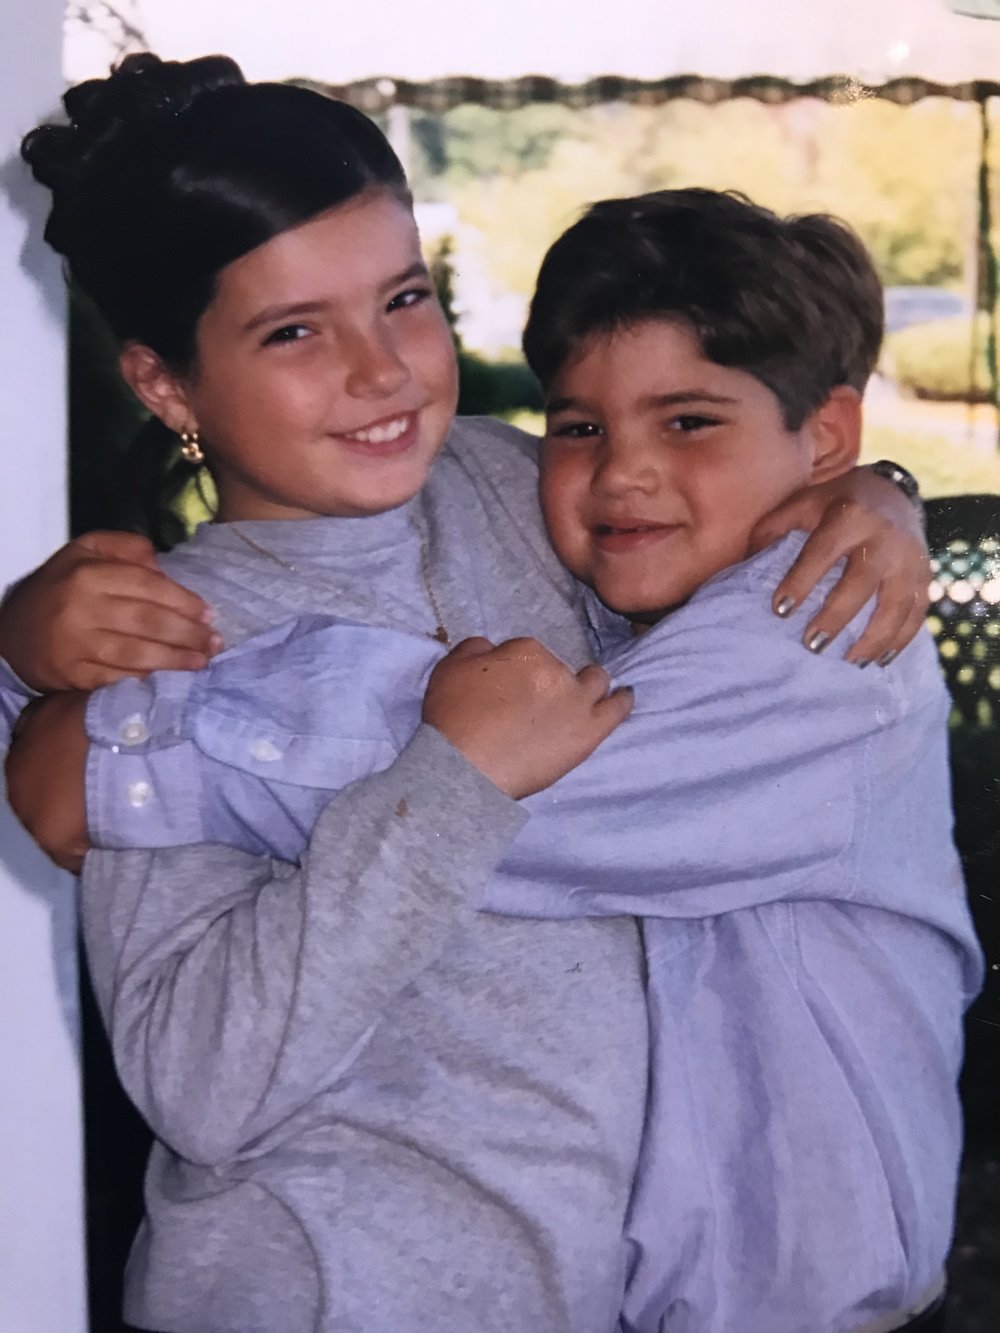 Jesse and Jordan hugging as kids